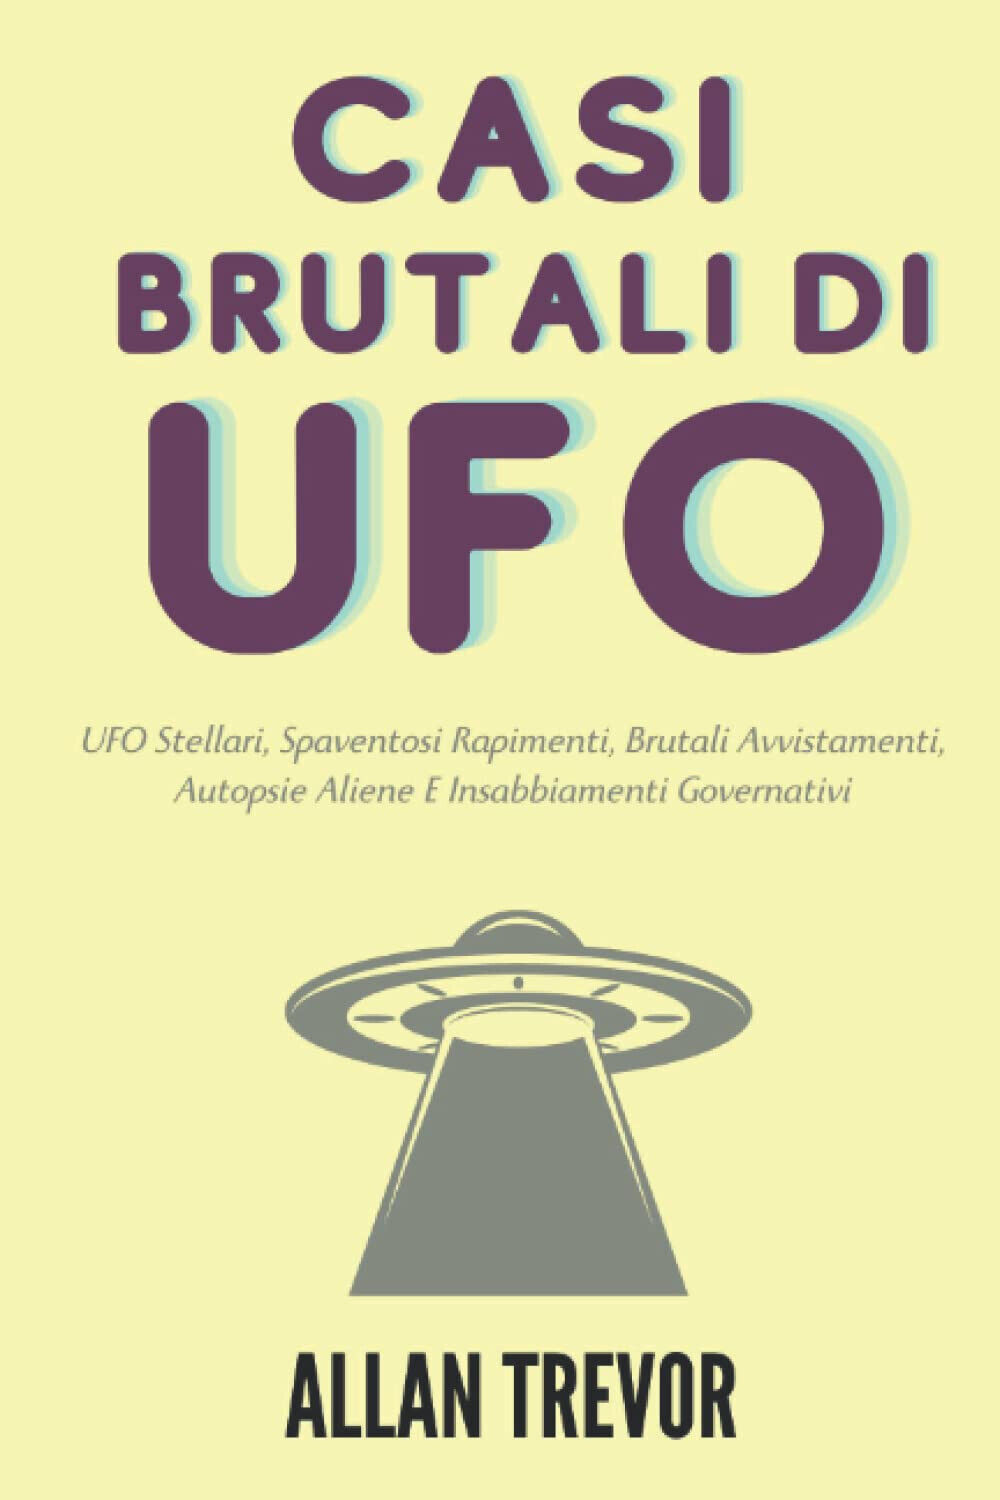 Casi Brutali Di UFO -Allan Trevor - Independently published, 2022